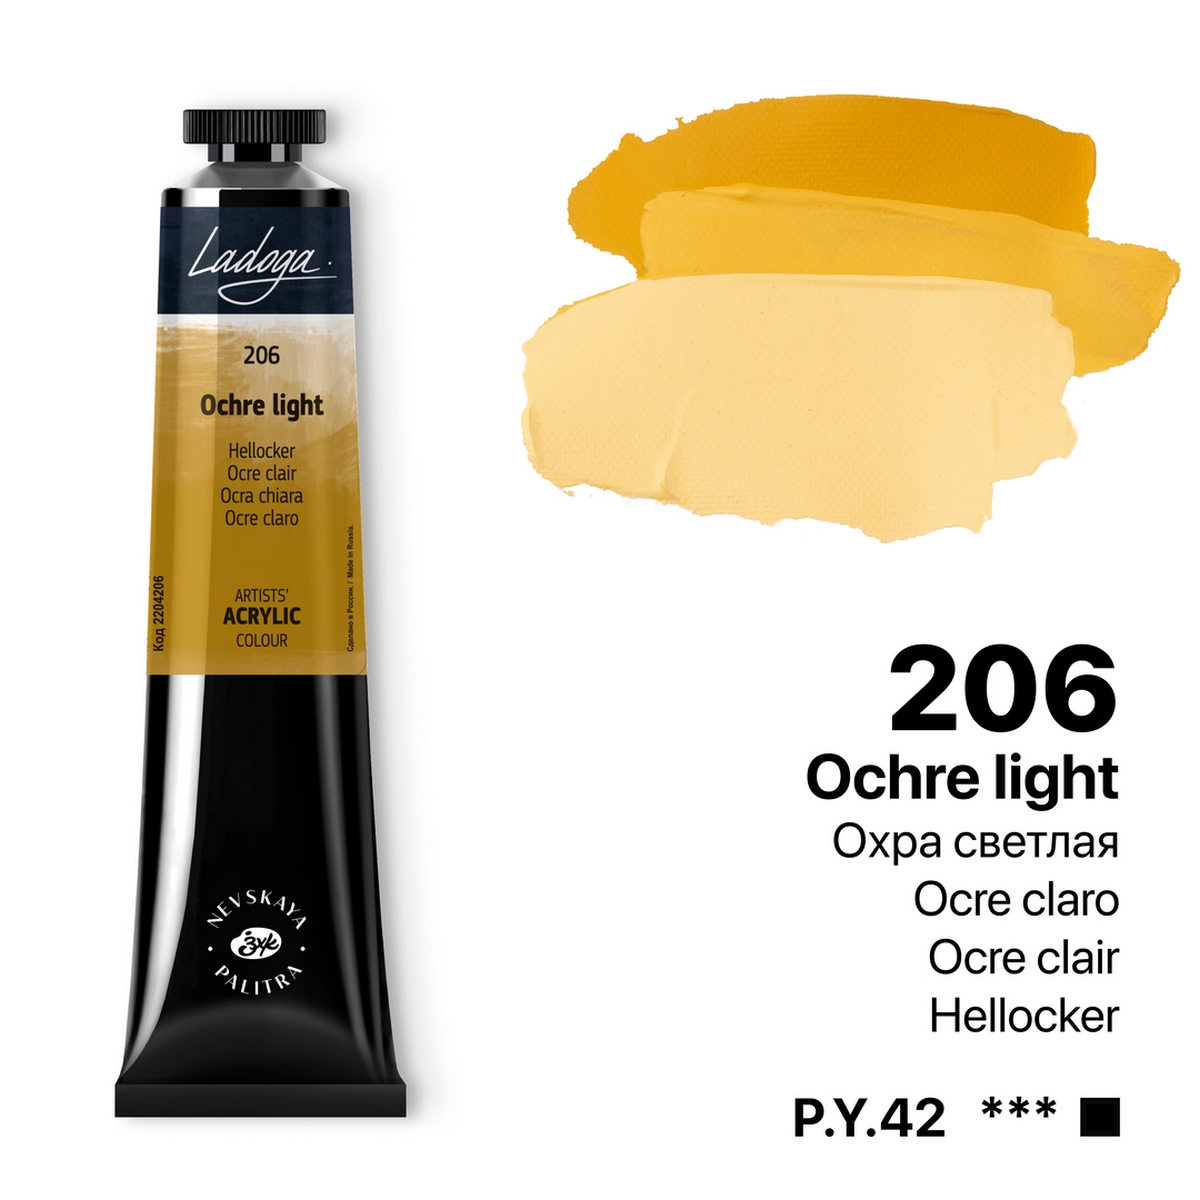 Acrylic colour Ladoga, Ocher light, № 206